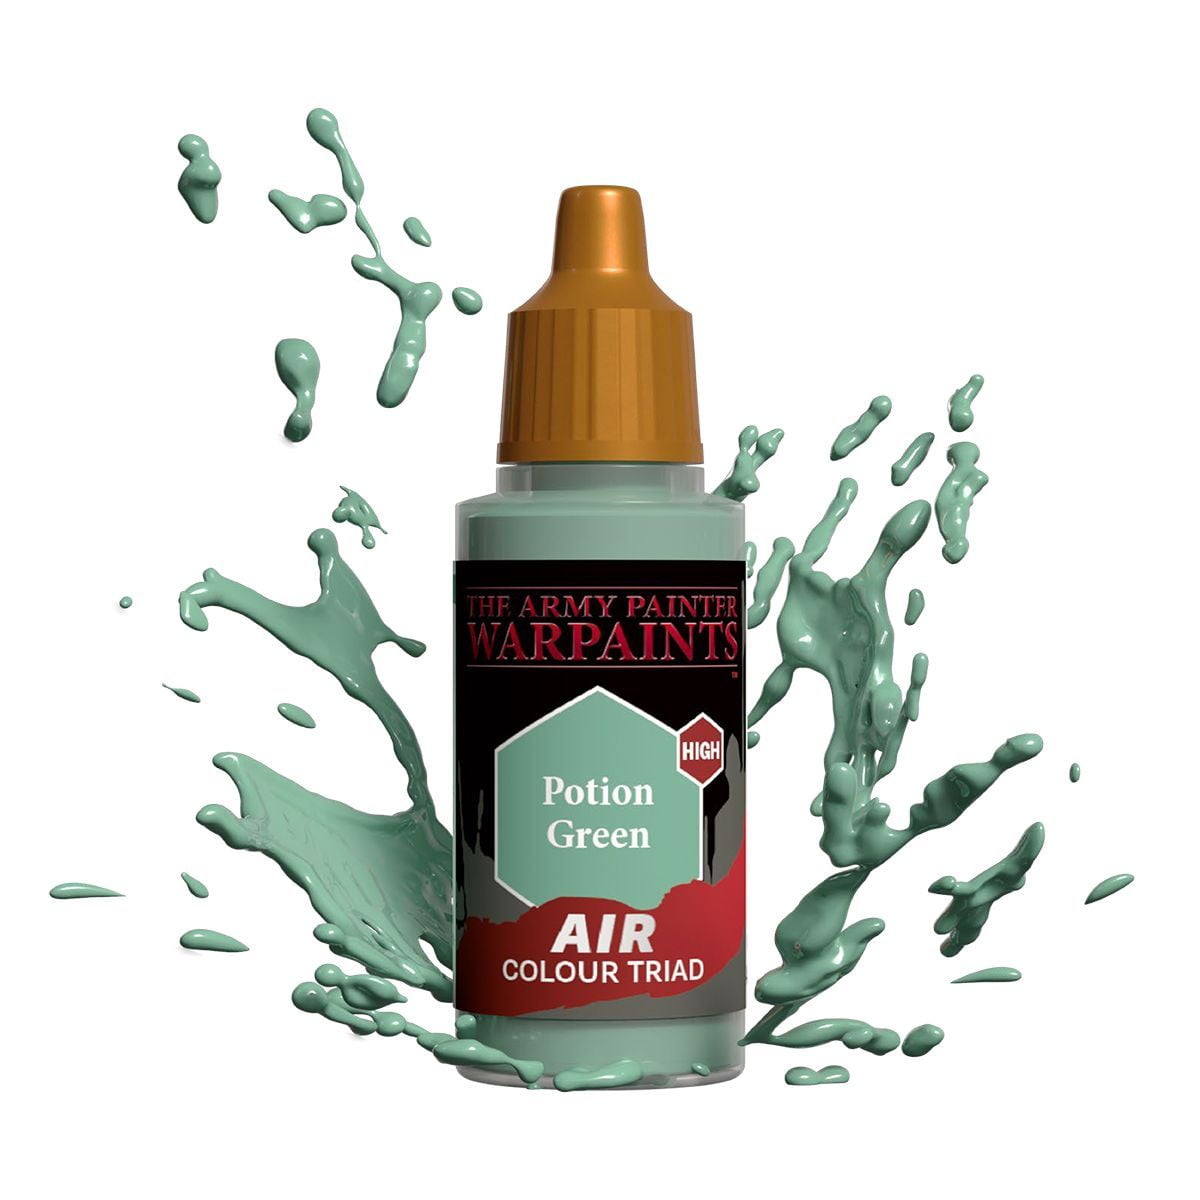 Air Potion Green - 18ml